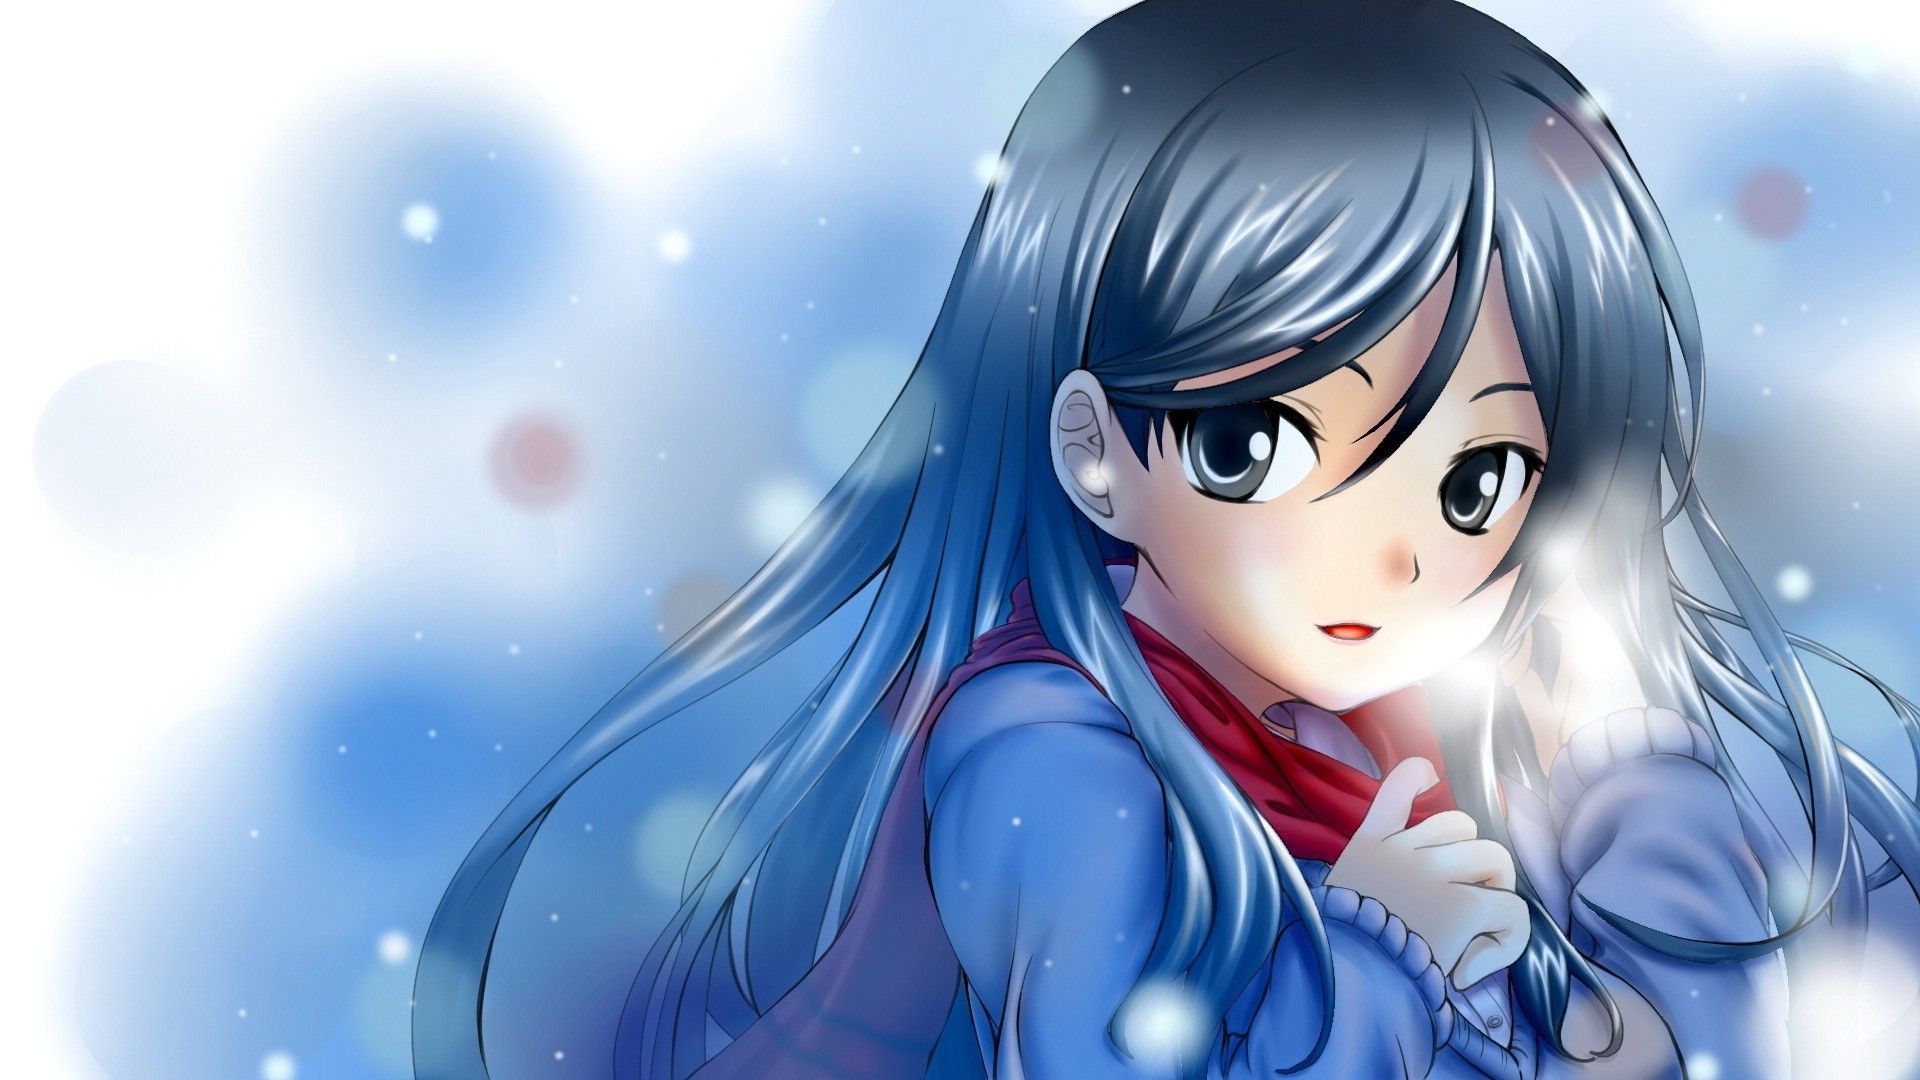 Beautiful Anime Girl Wallpaper HD 1920x1080